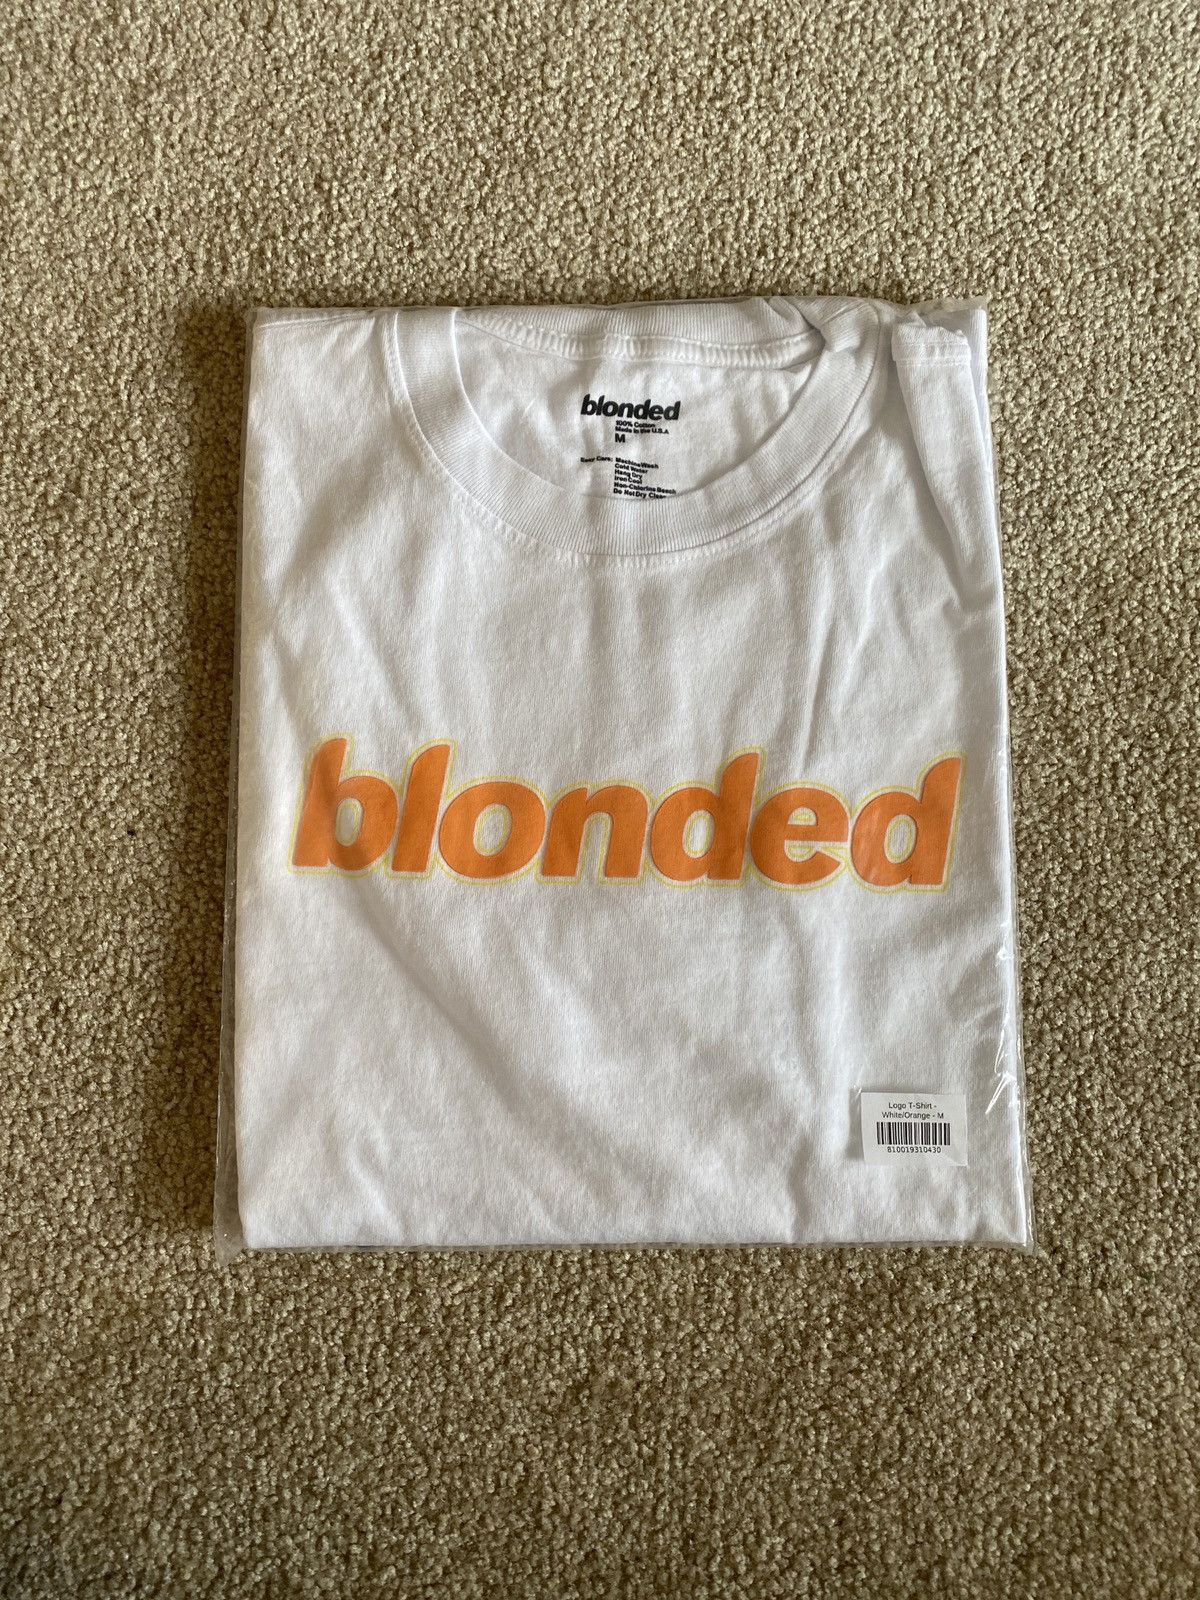 Frank Ocean Blonded Logo T-Shirt White/Orange | Grailed